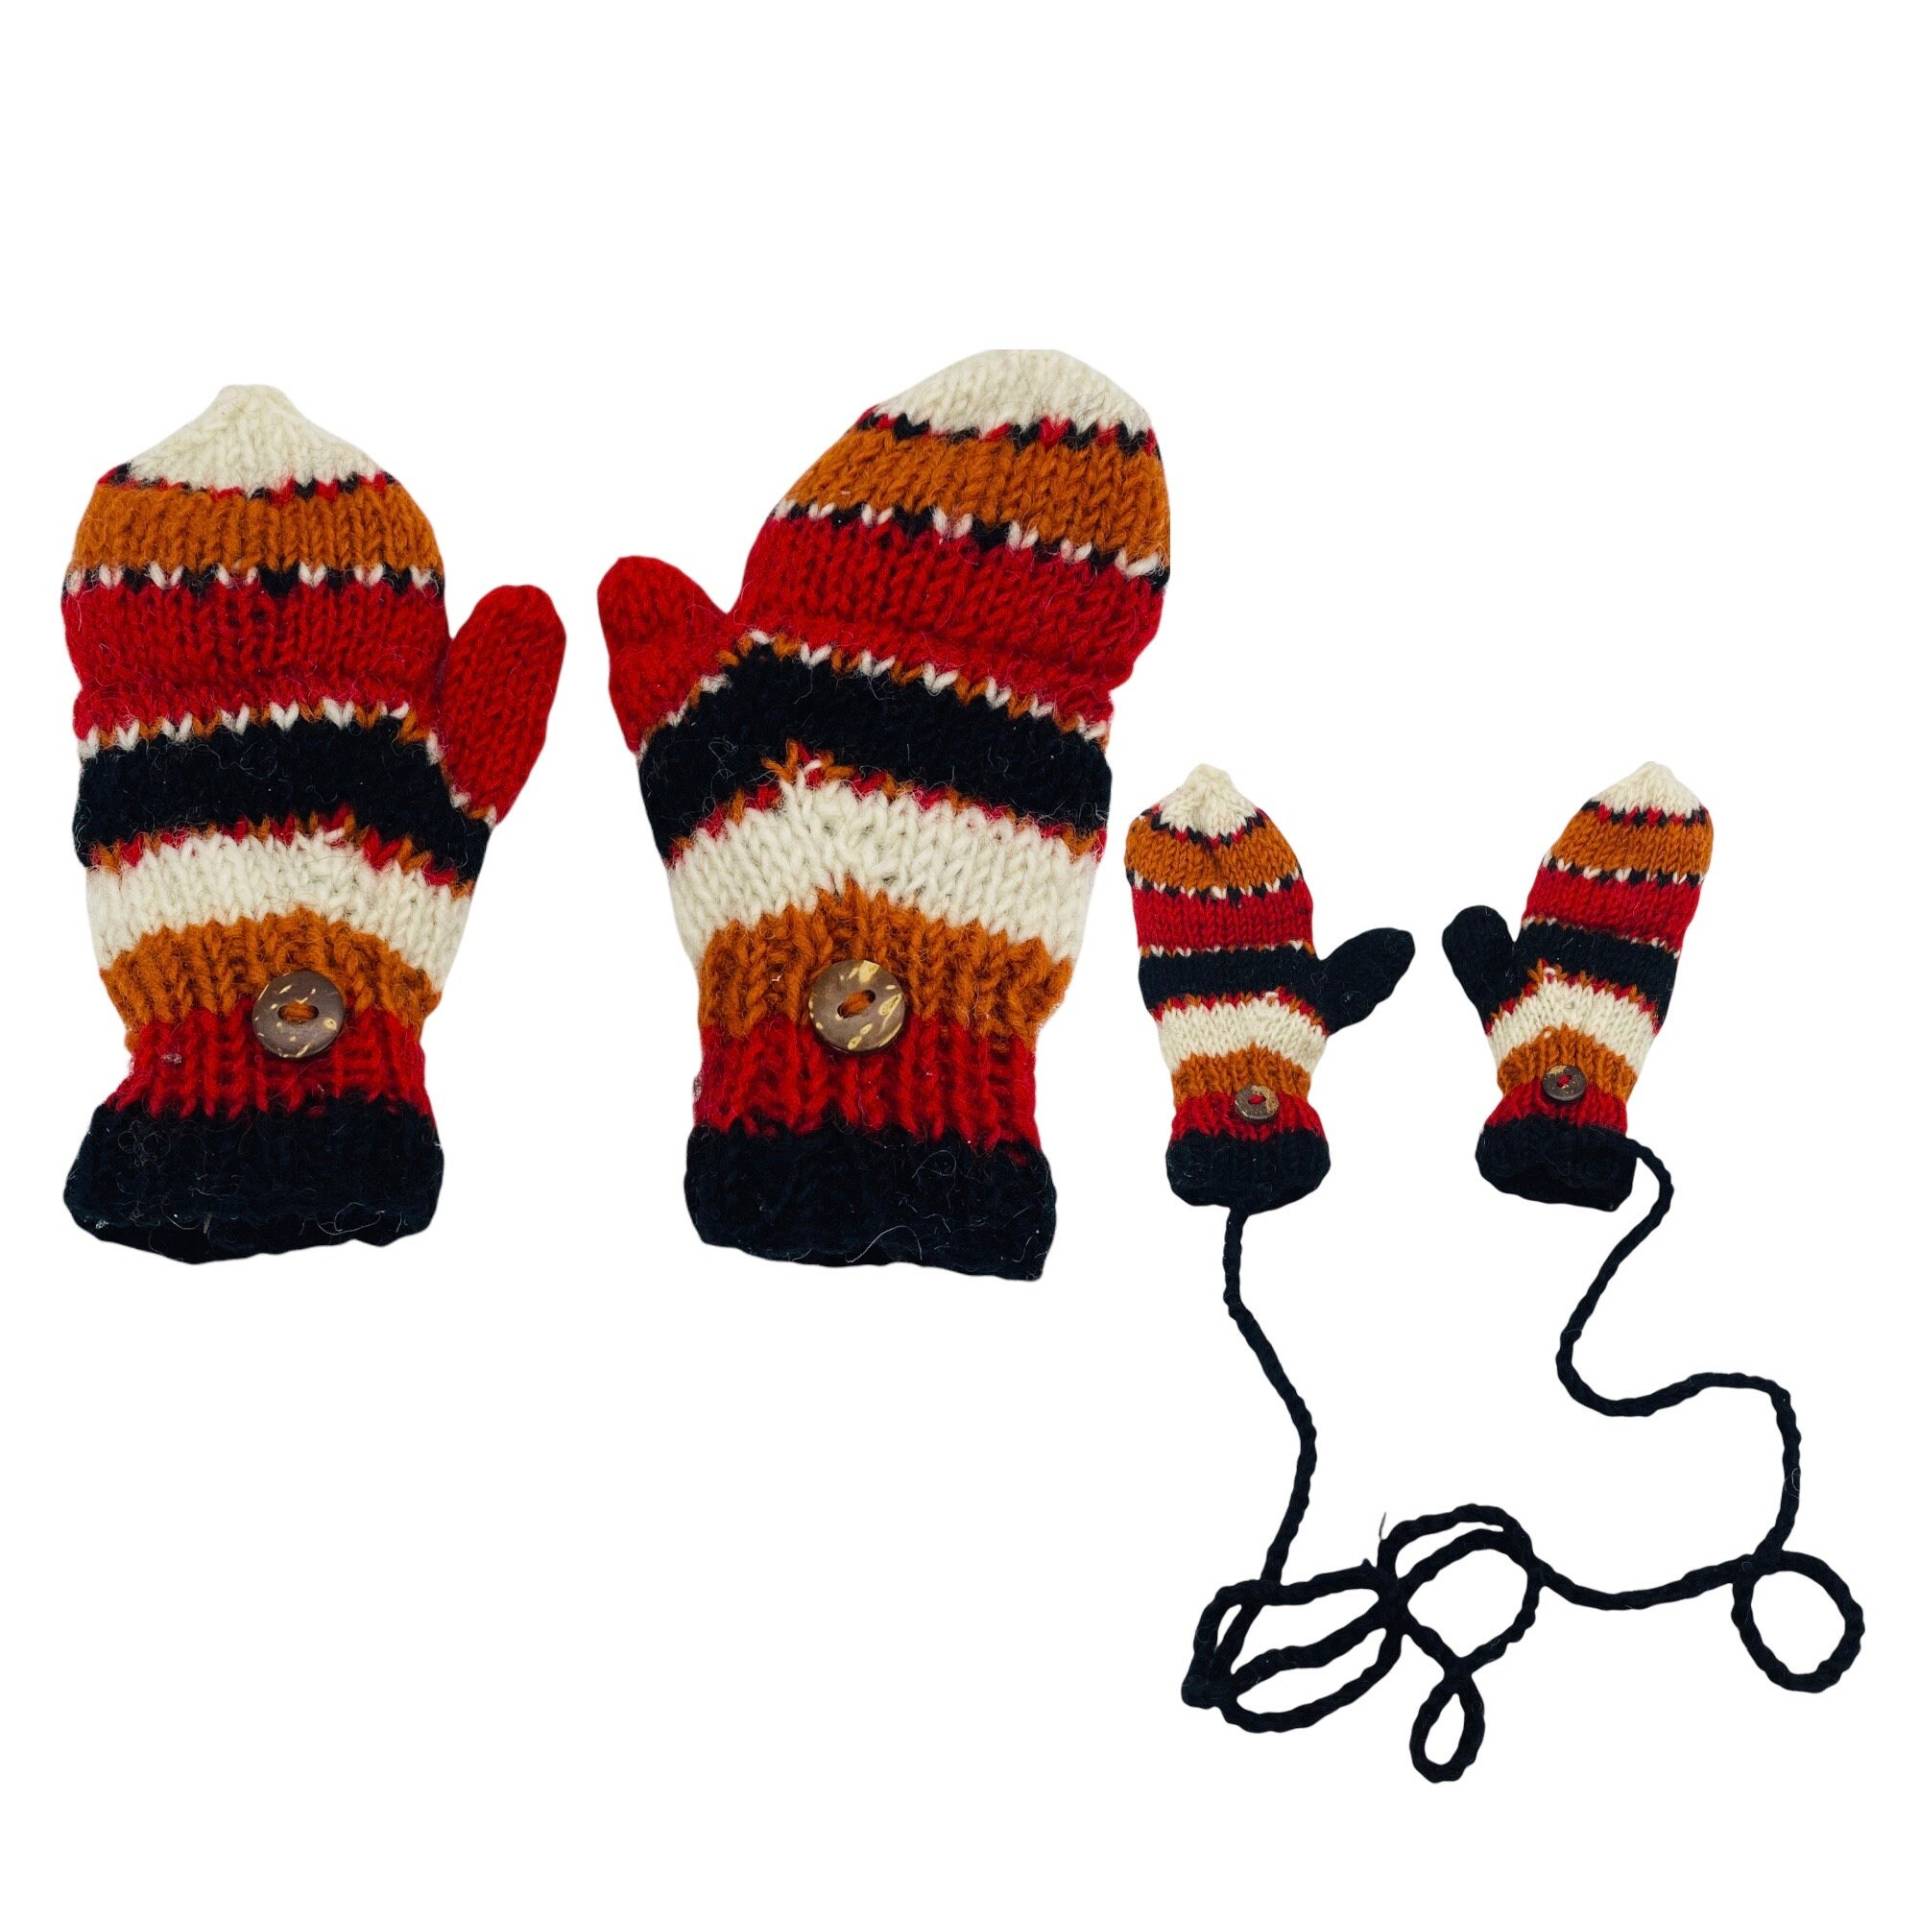 Gestrickte Wolle Kinder-Handschuhe, 0-3 Jahre Handgemachte Handschuhe, Kleinkind-Handschuhe, Merino-Wolle-Handschuhe, Fleece-Gefütterte von karmanepalcrafts